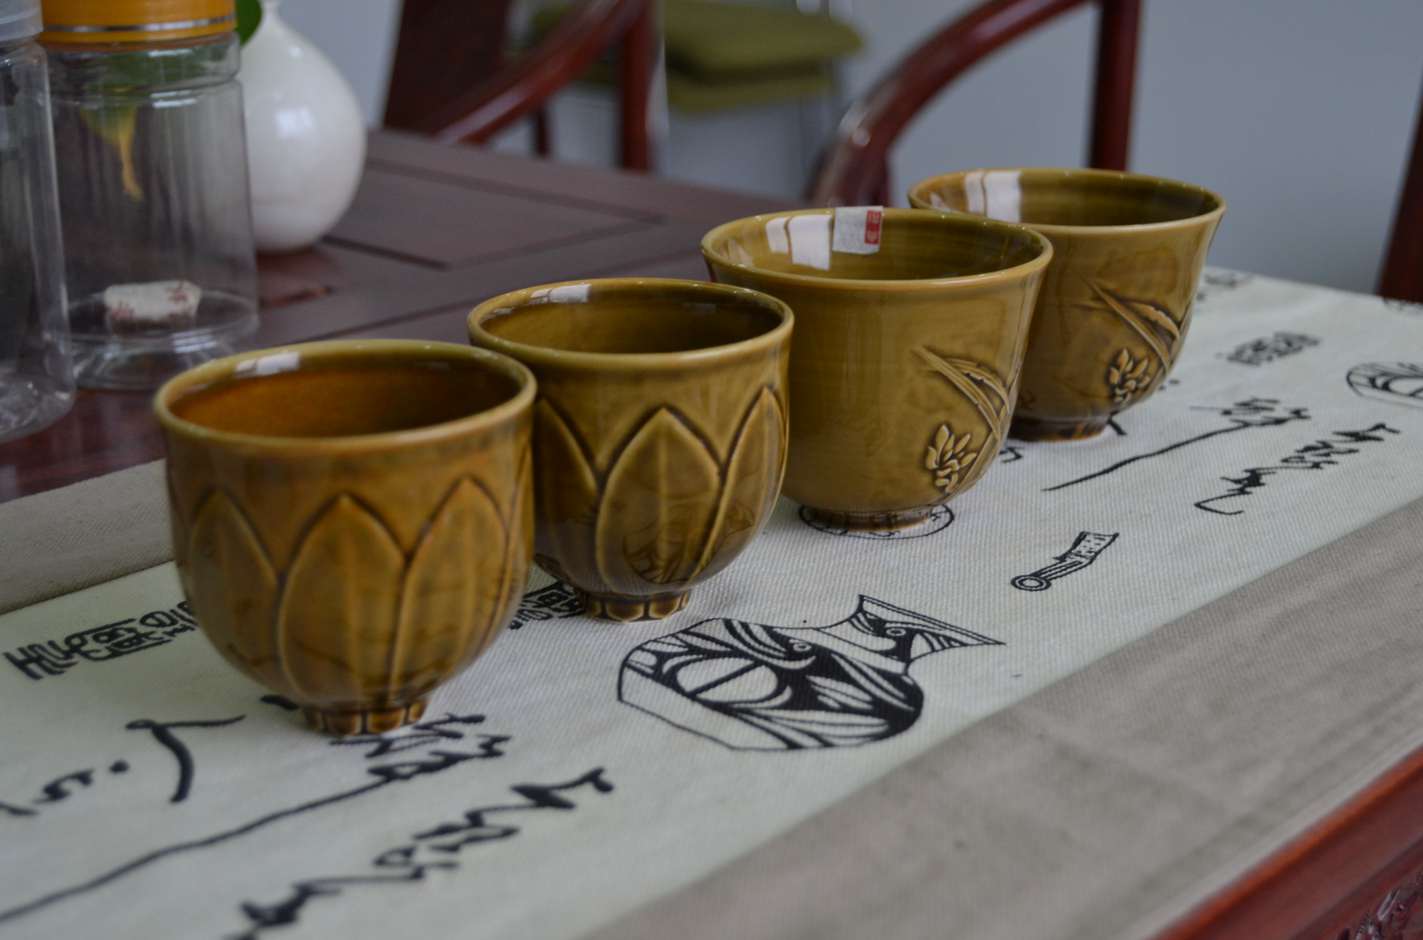 大宋定窑制作的定瓷精品-九瓣莲花杯和兰花杯